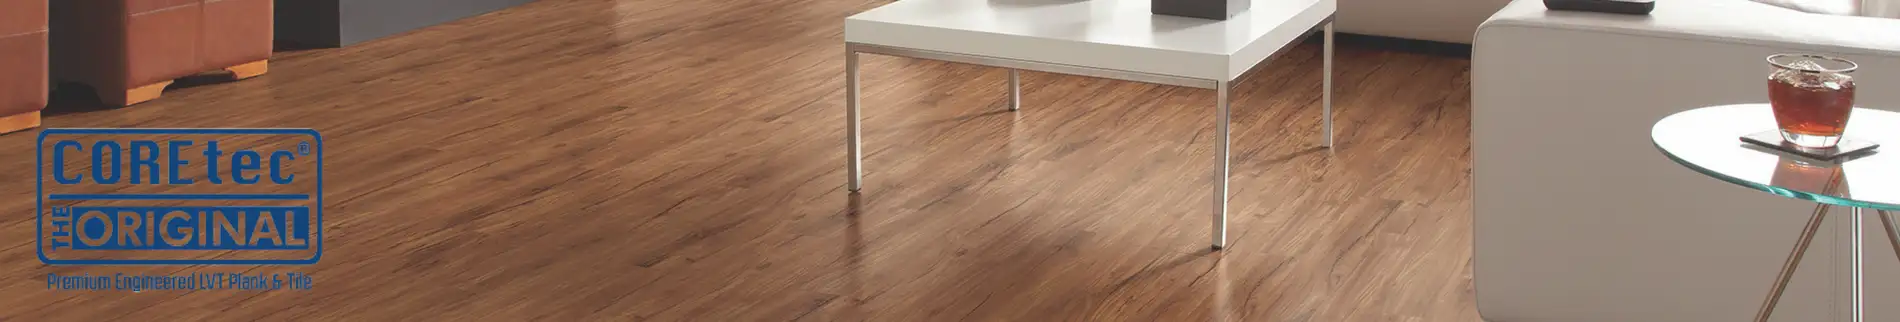 coretec flooring in living room